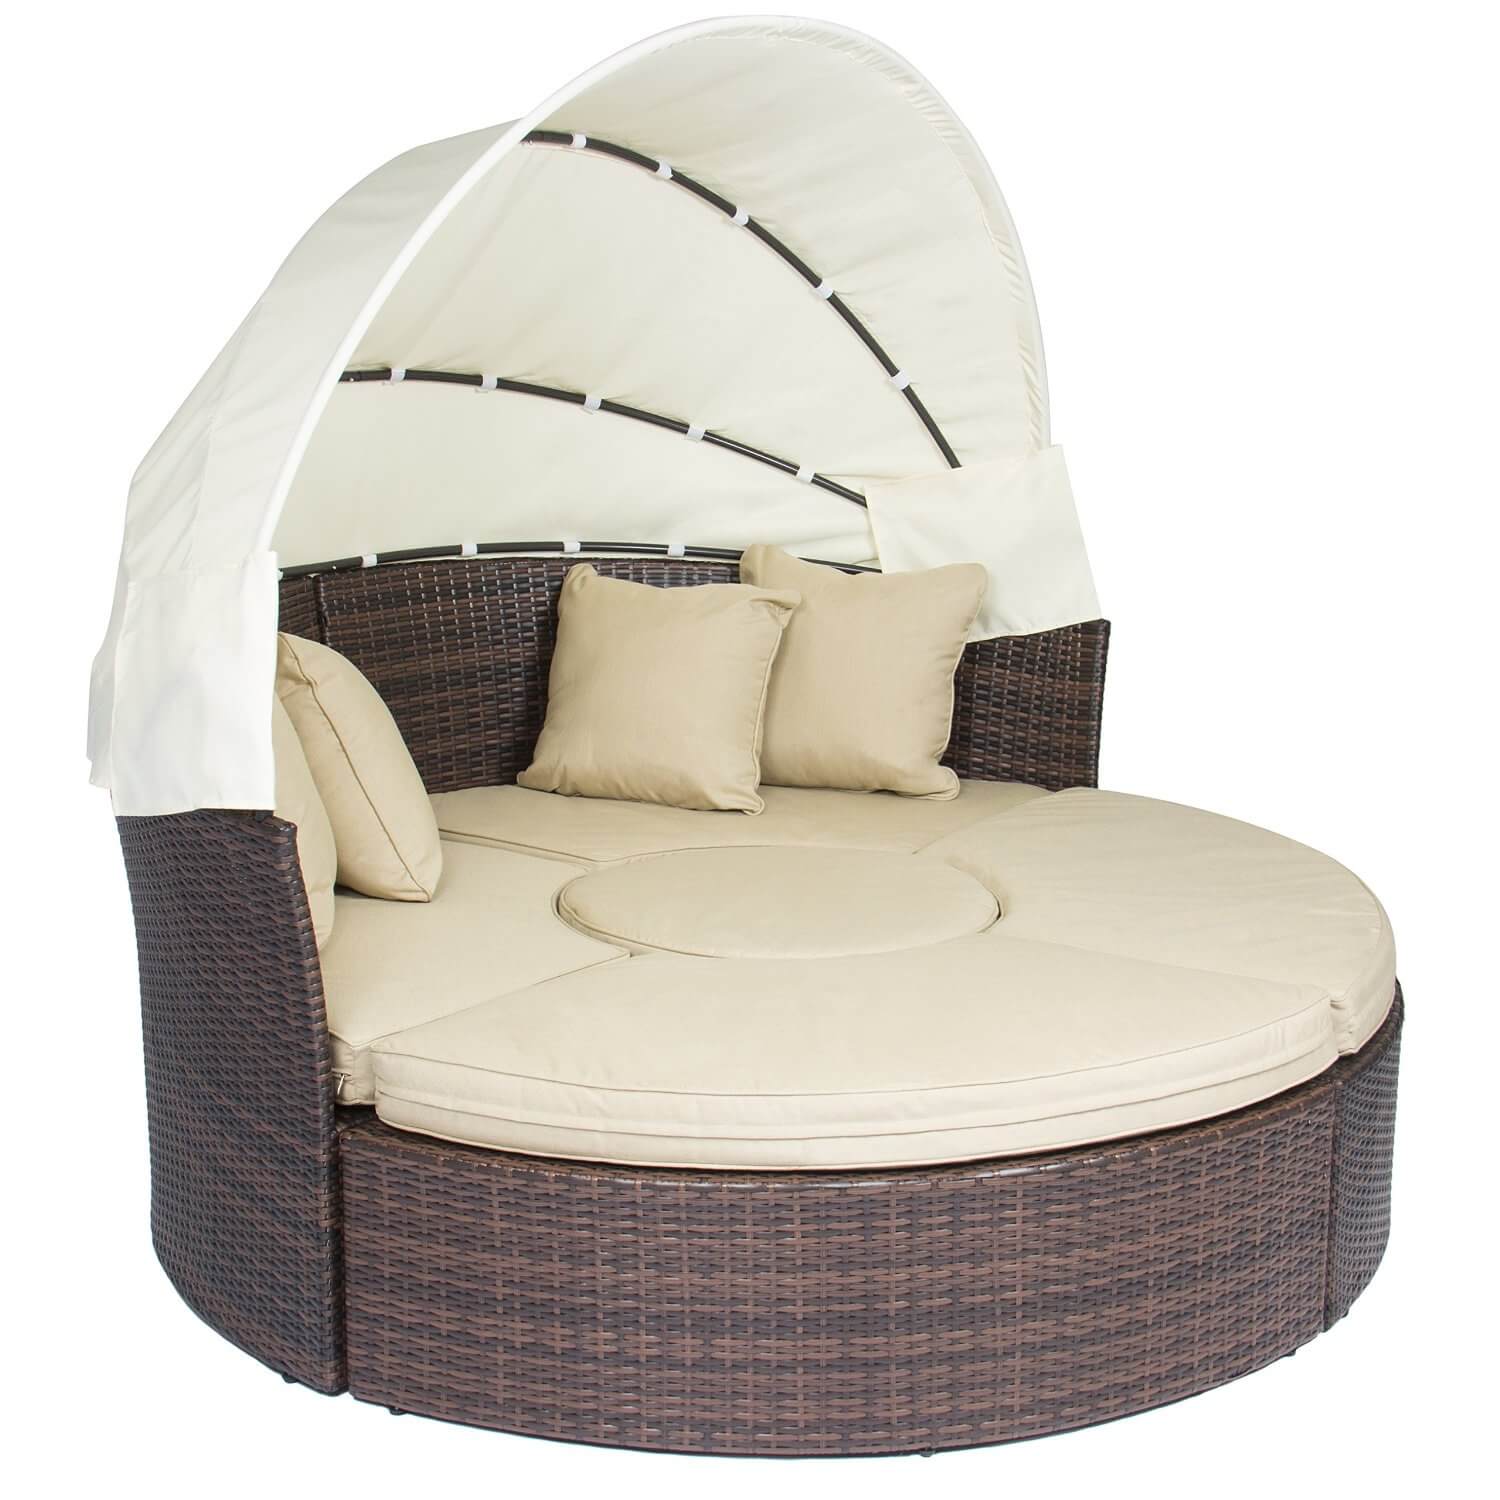 Retractable Canopy Wicker Sofa